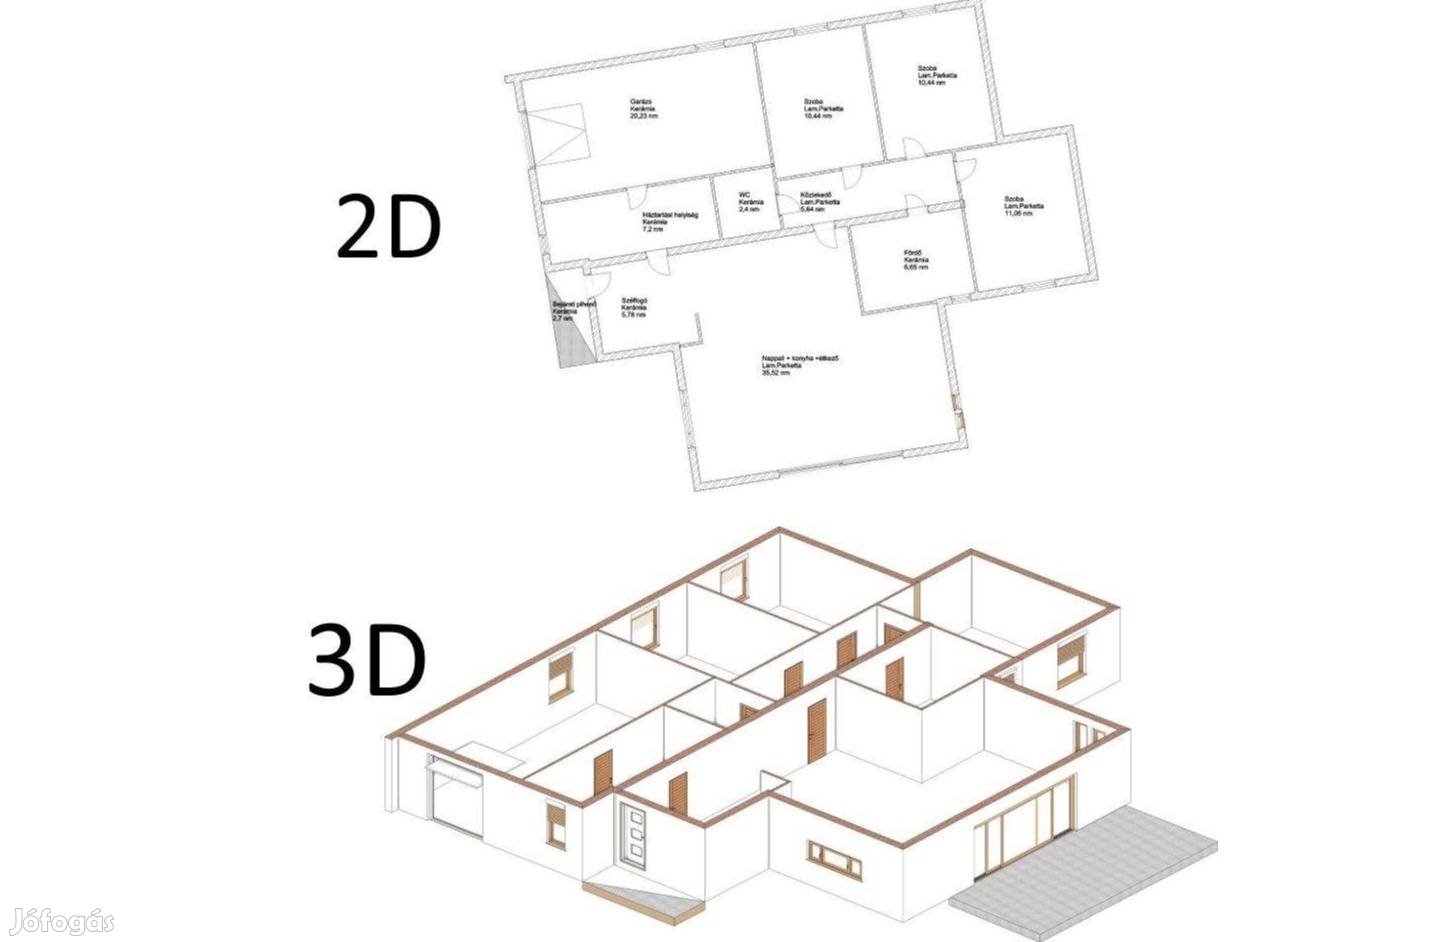 Lakások, családi házak alaprajzainak digitalizálása, 3D-be alakítás